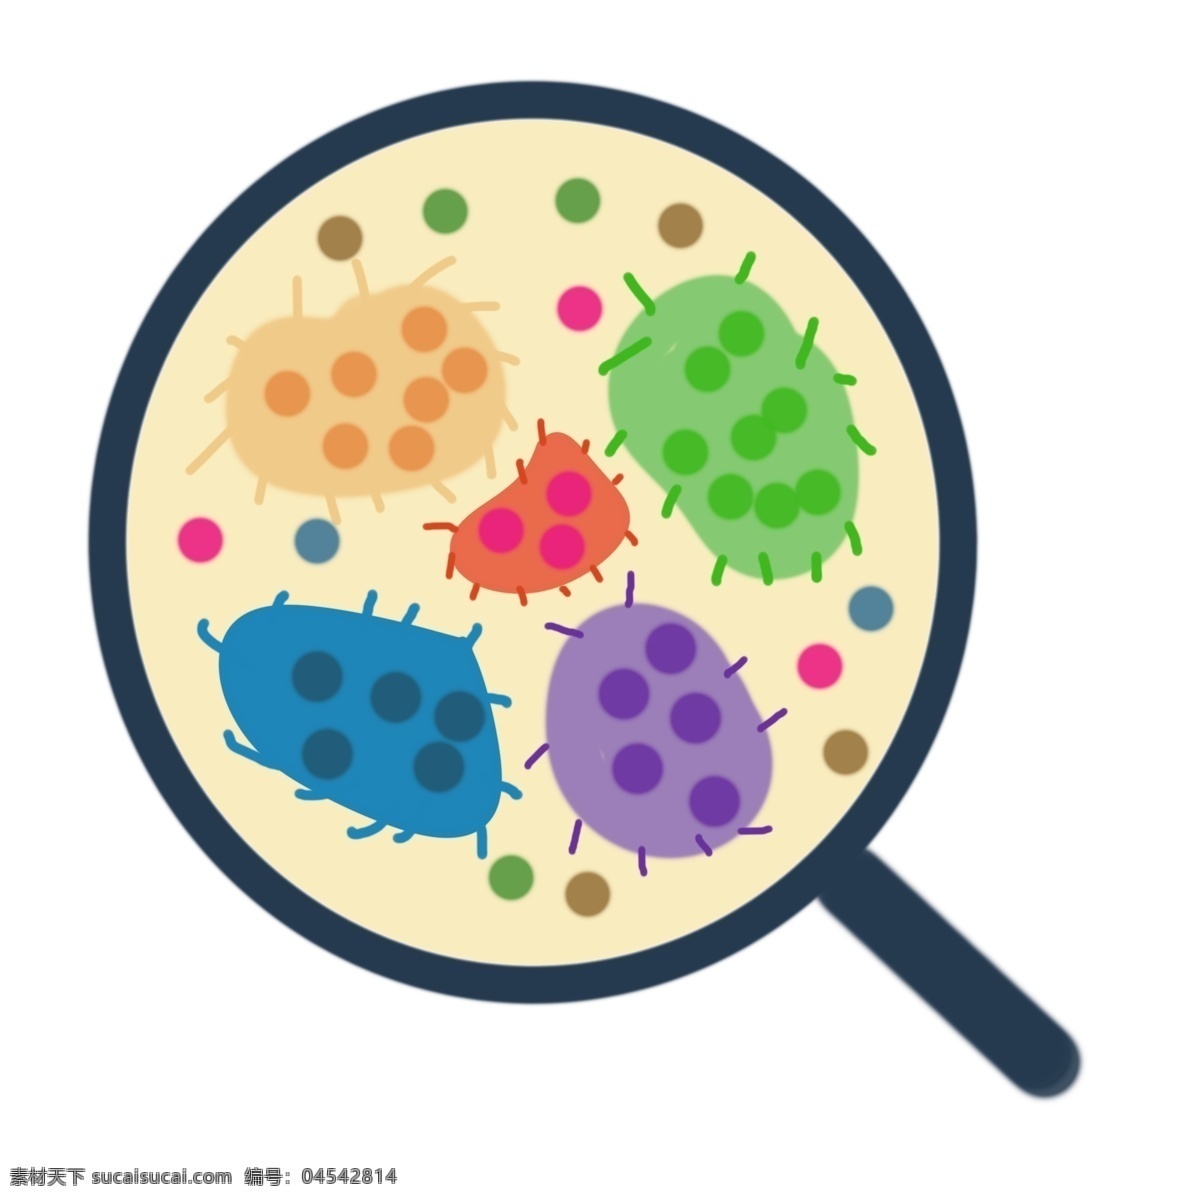 放大 的卡 通 细菌 插画 放大的细菌 蓝色的放大镜 细菌插画 生物细菌插画 卡通细菌插画 毛球细菌